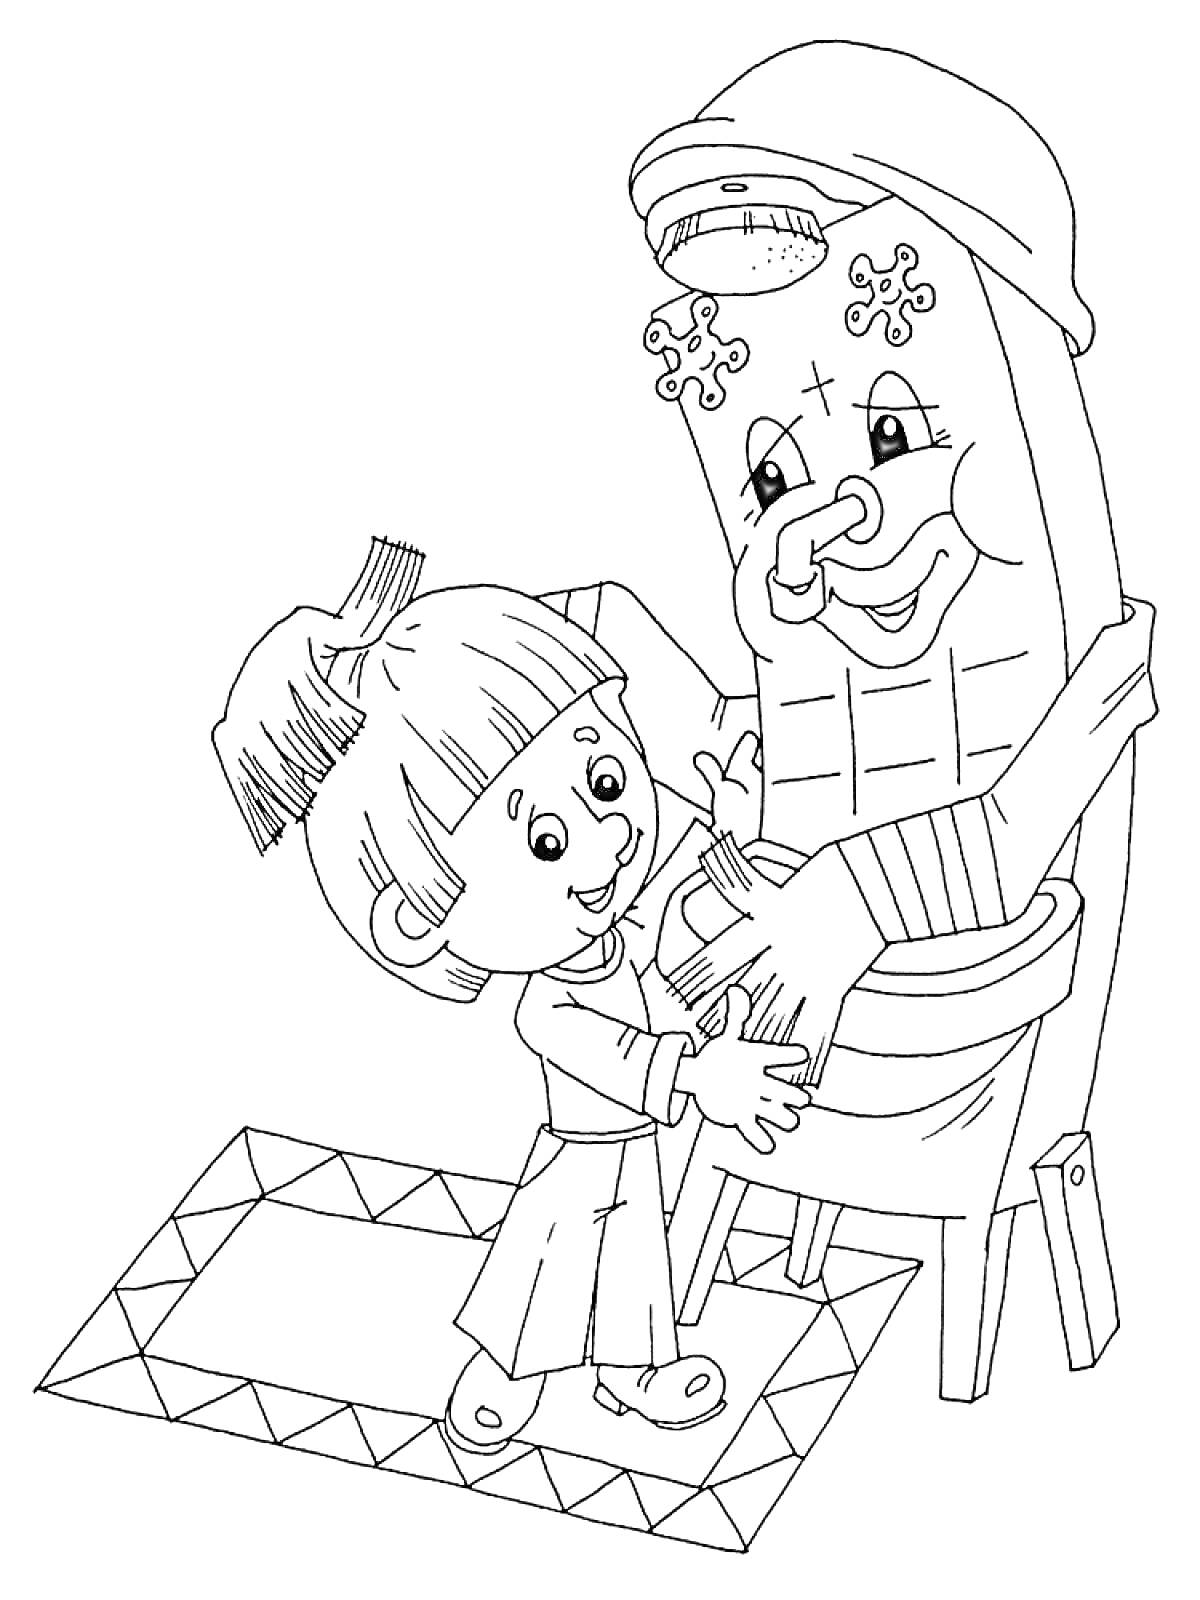 Раскраска Ребенок обнимает Мойдодыра, раковина с лицом, ковер